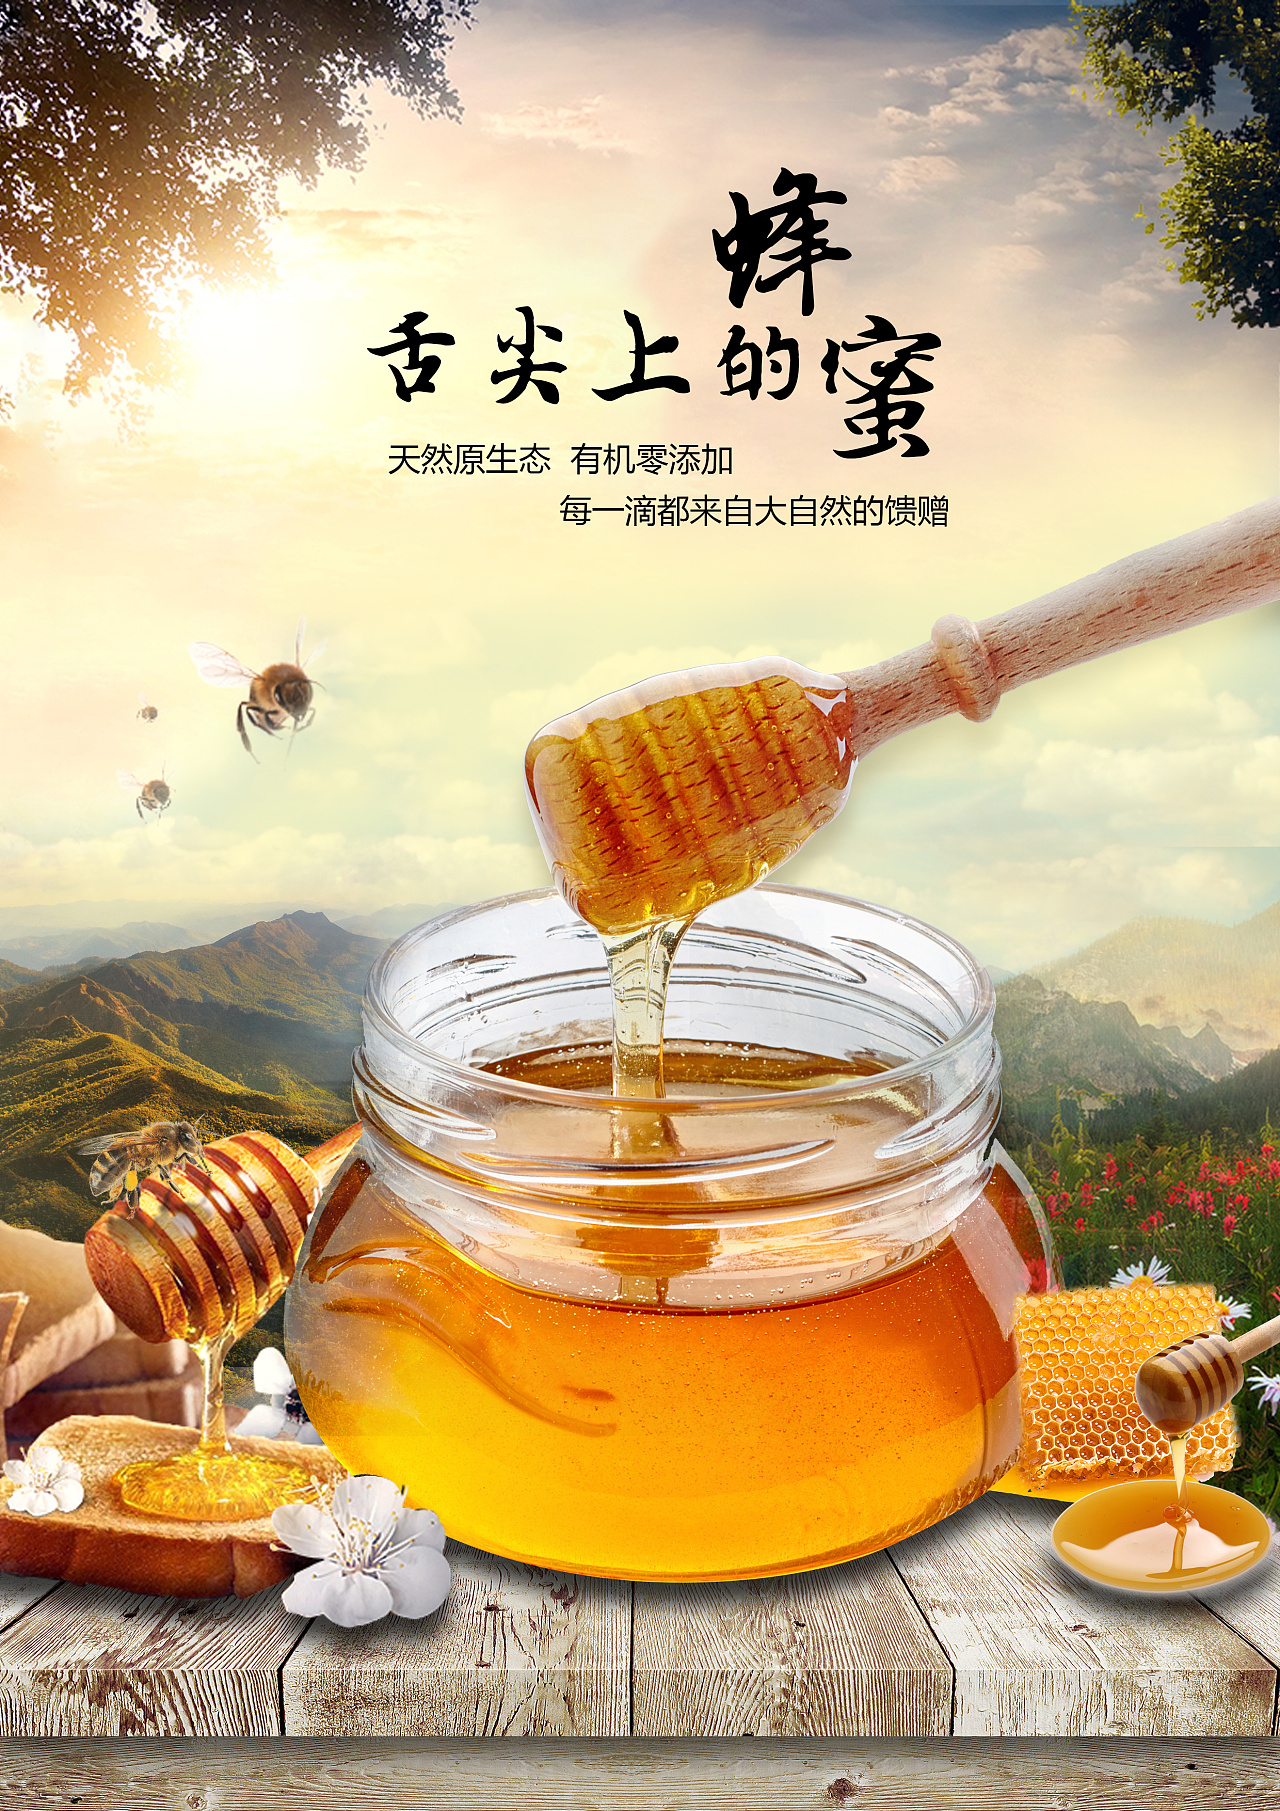 自家产的蜂蜜广告图片